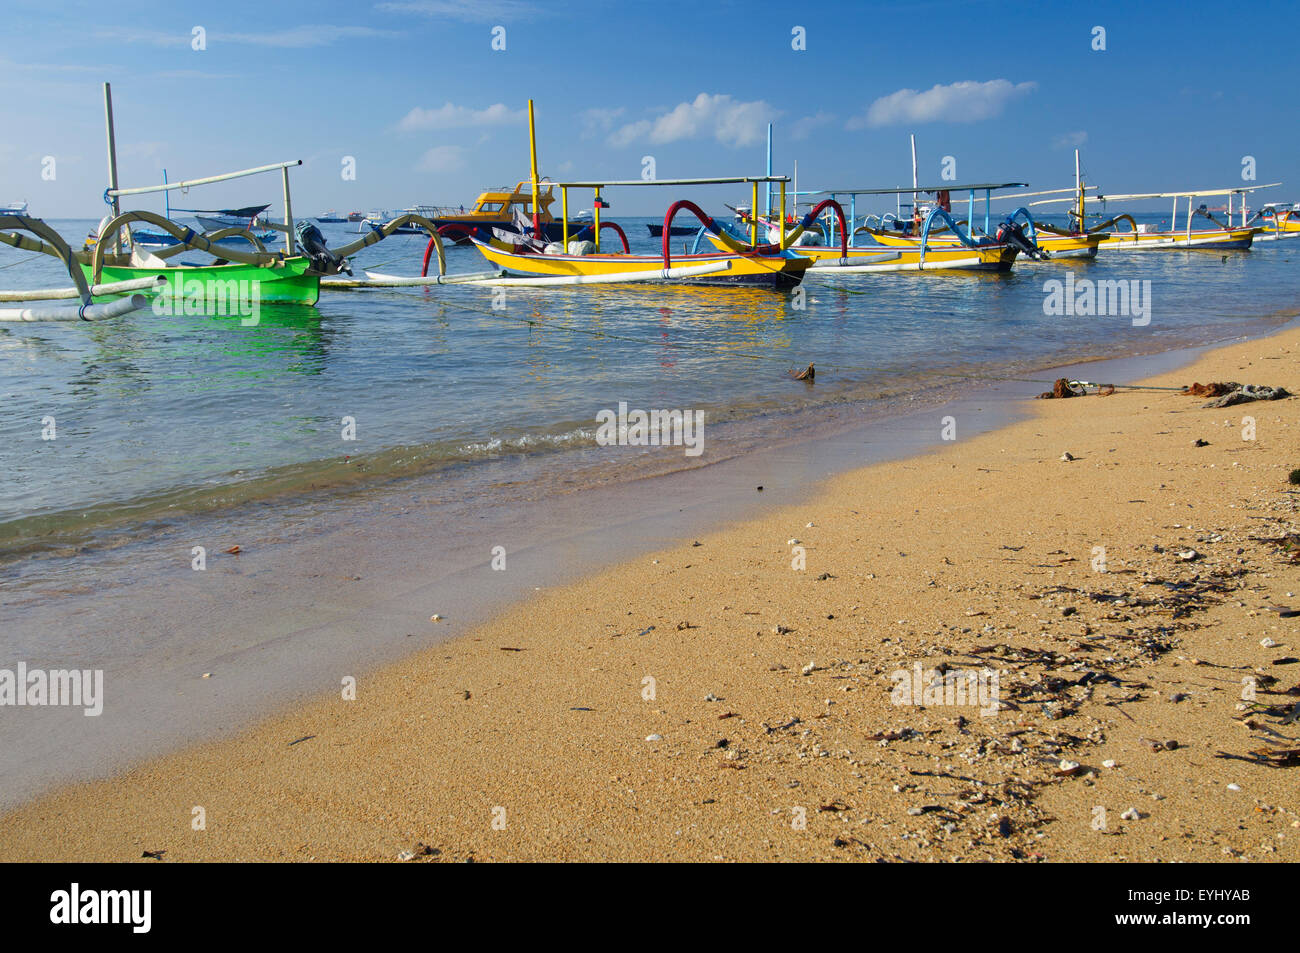 Bateaux locaux, appelés jukungs, alignés à l'ancre sur une plage de Sanur, Bali, Indonésie SE Banque D'Images